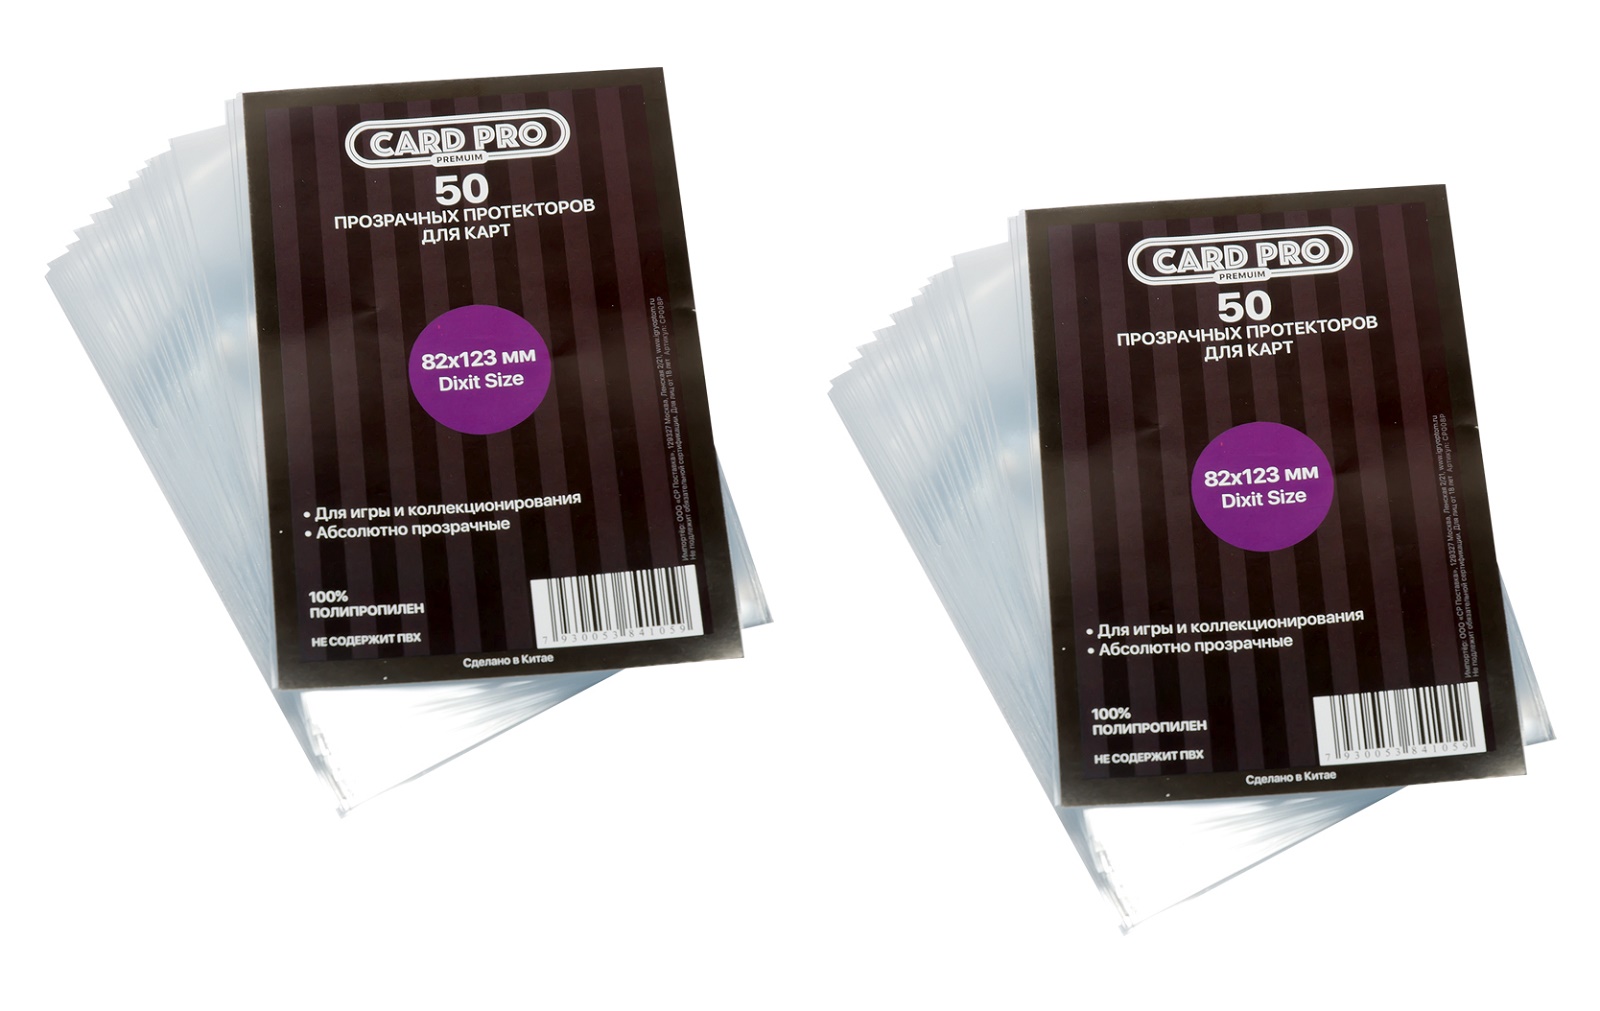 Протекторы Card-Pro PREMIUM Dixit Size для настольных игр 82x123 мм. 2 пачки протекторы card pro euro для настольных игр 59x92 мм 2 пачки